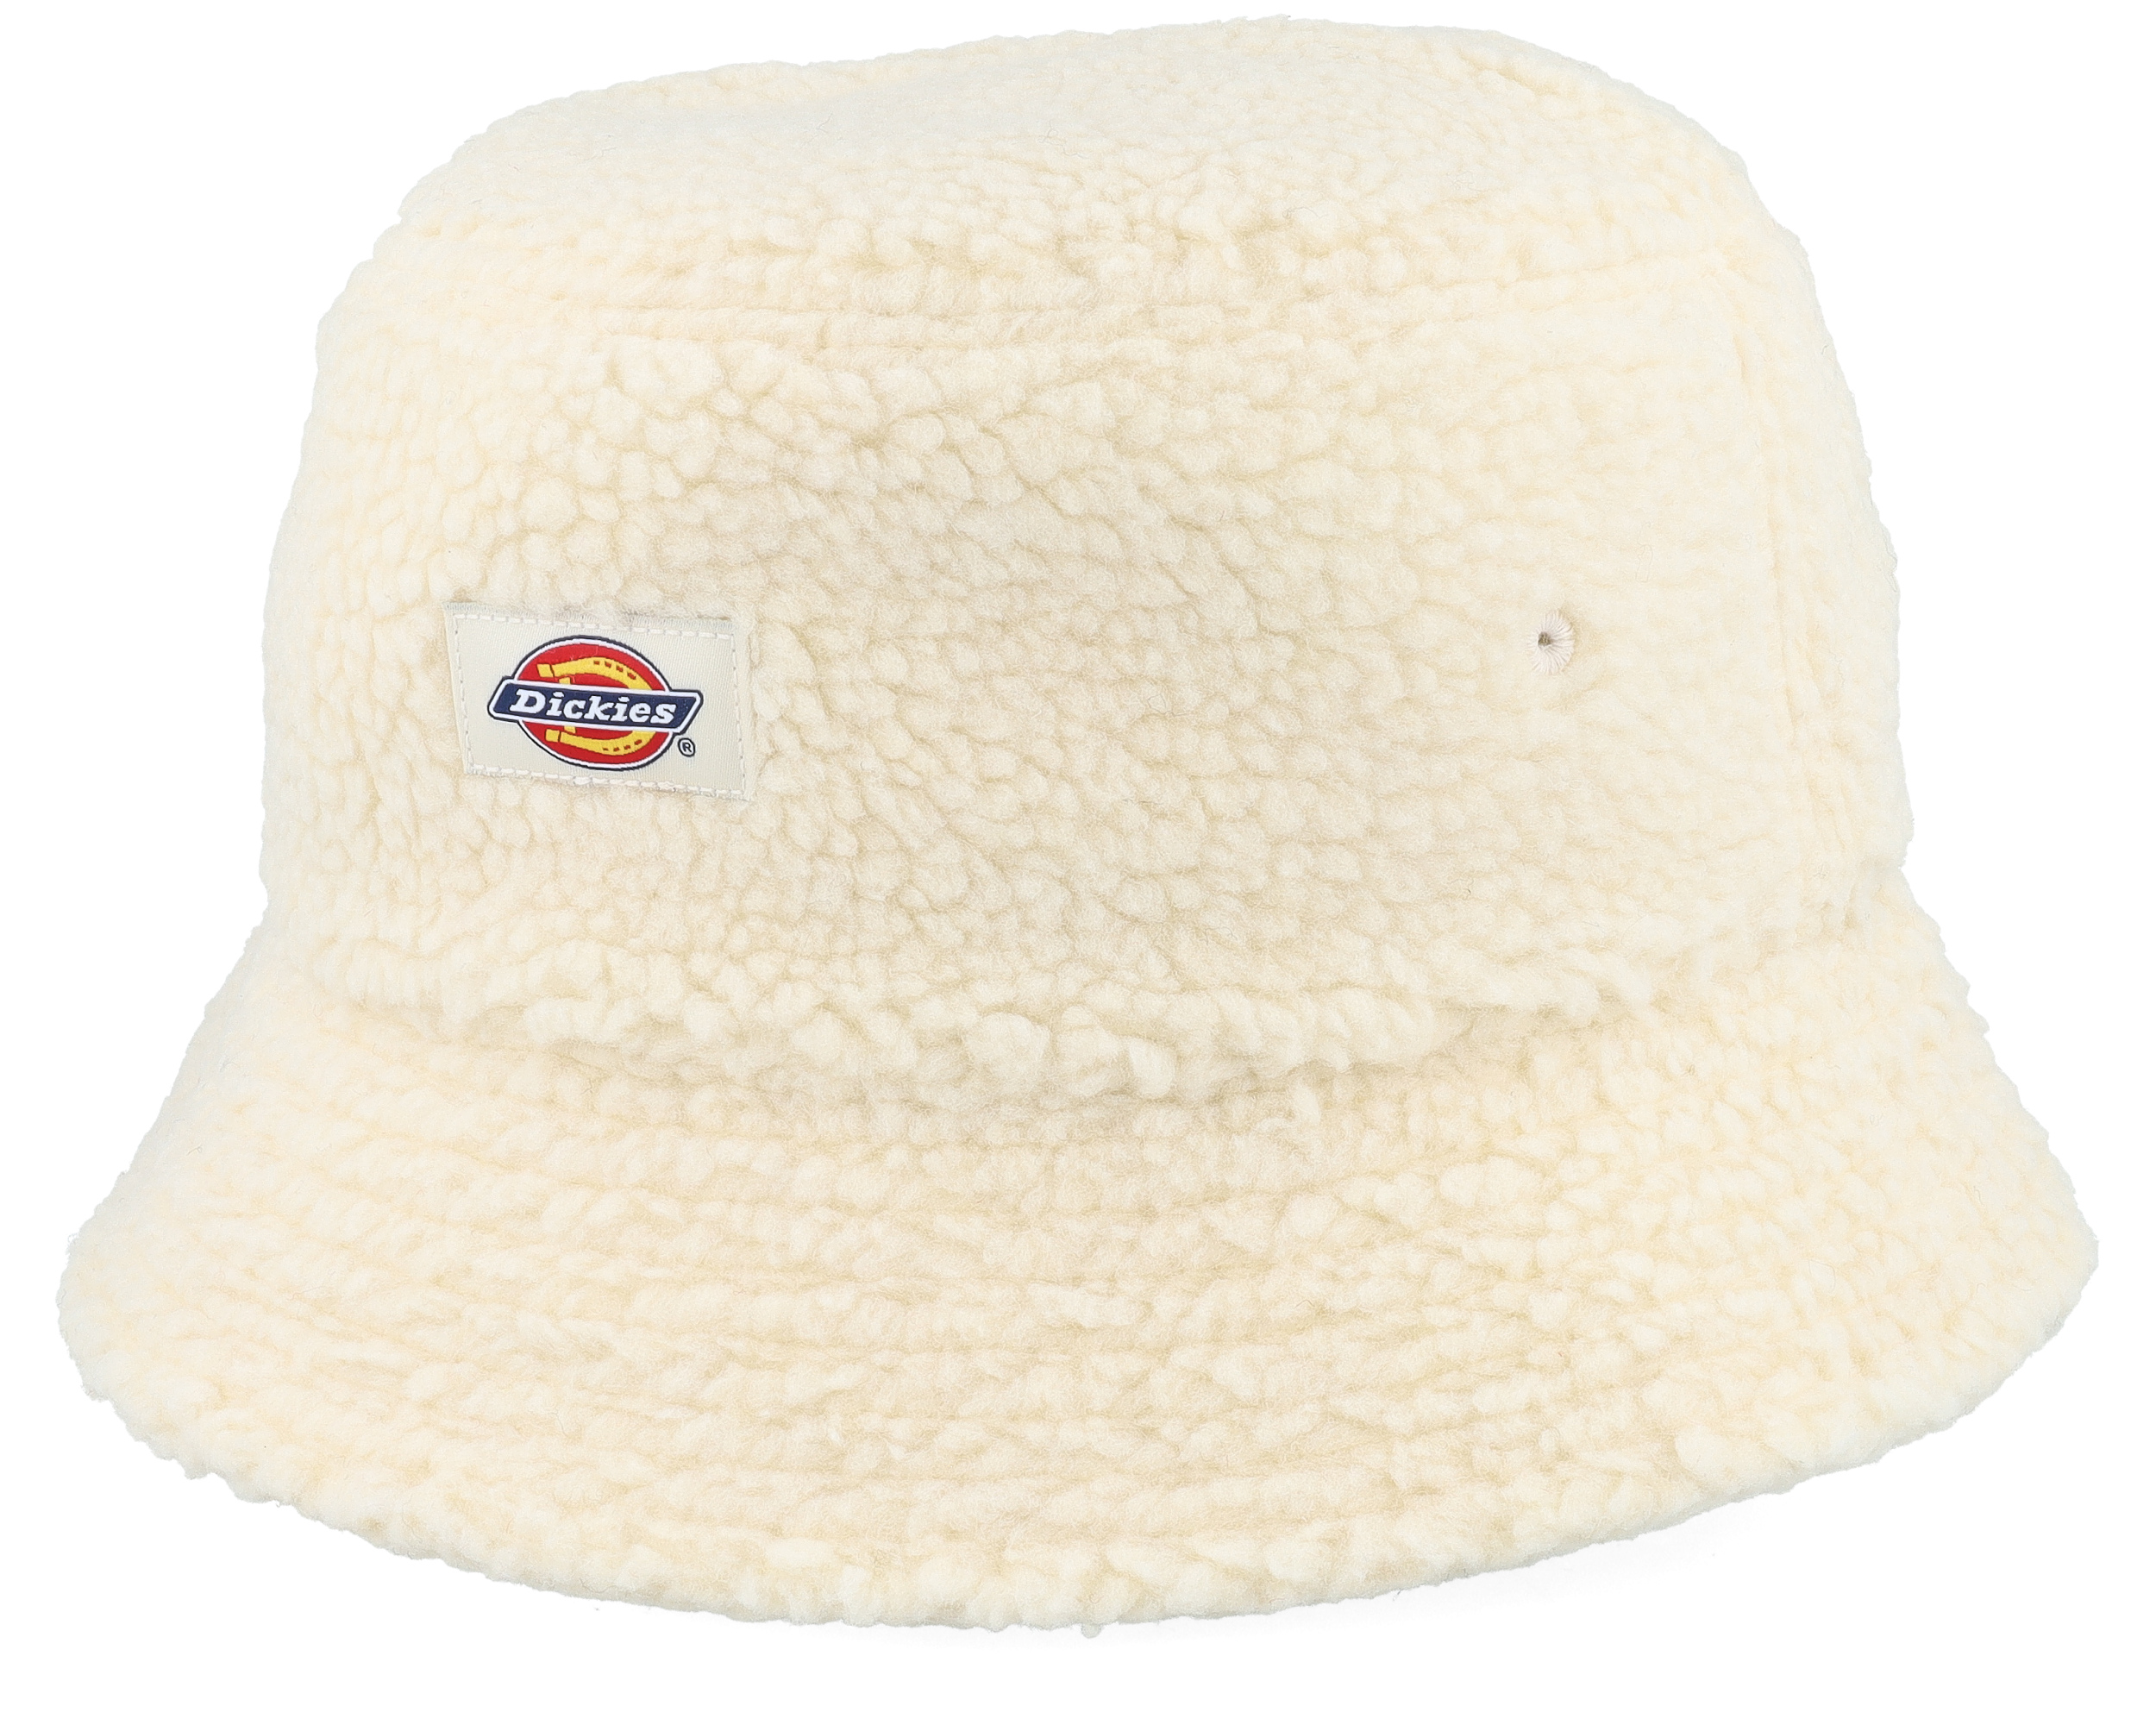 Red Chute White Bucket - Dickies hat | Hatstoreworld.com